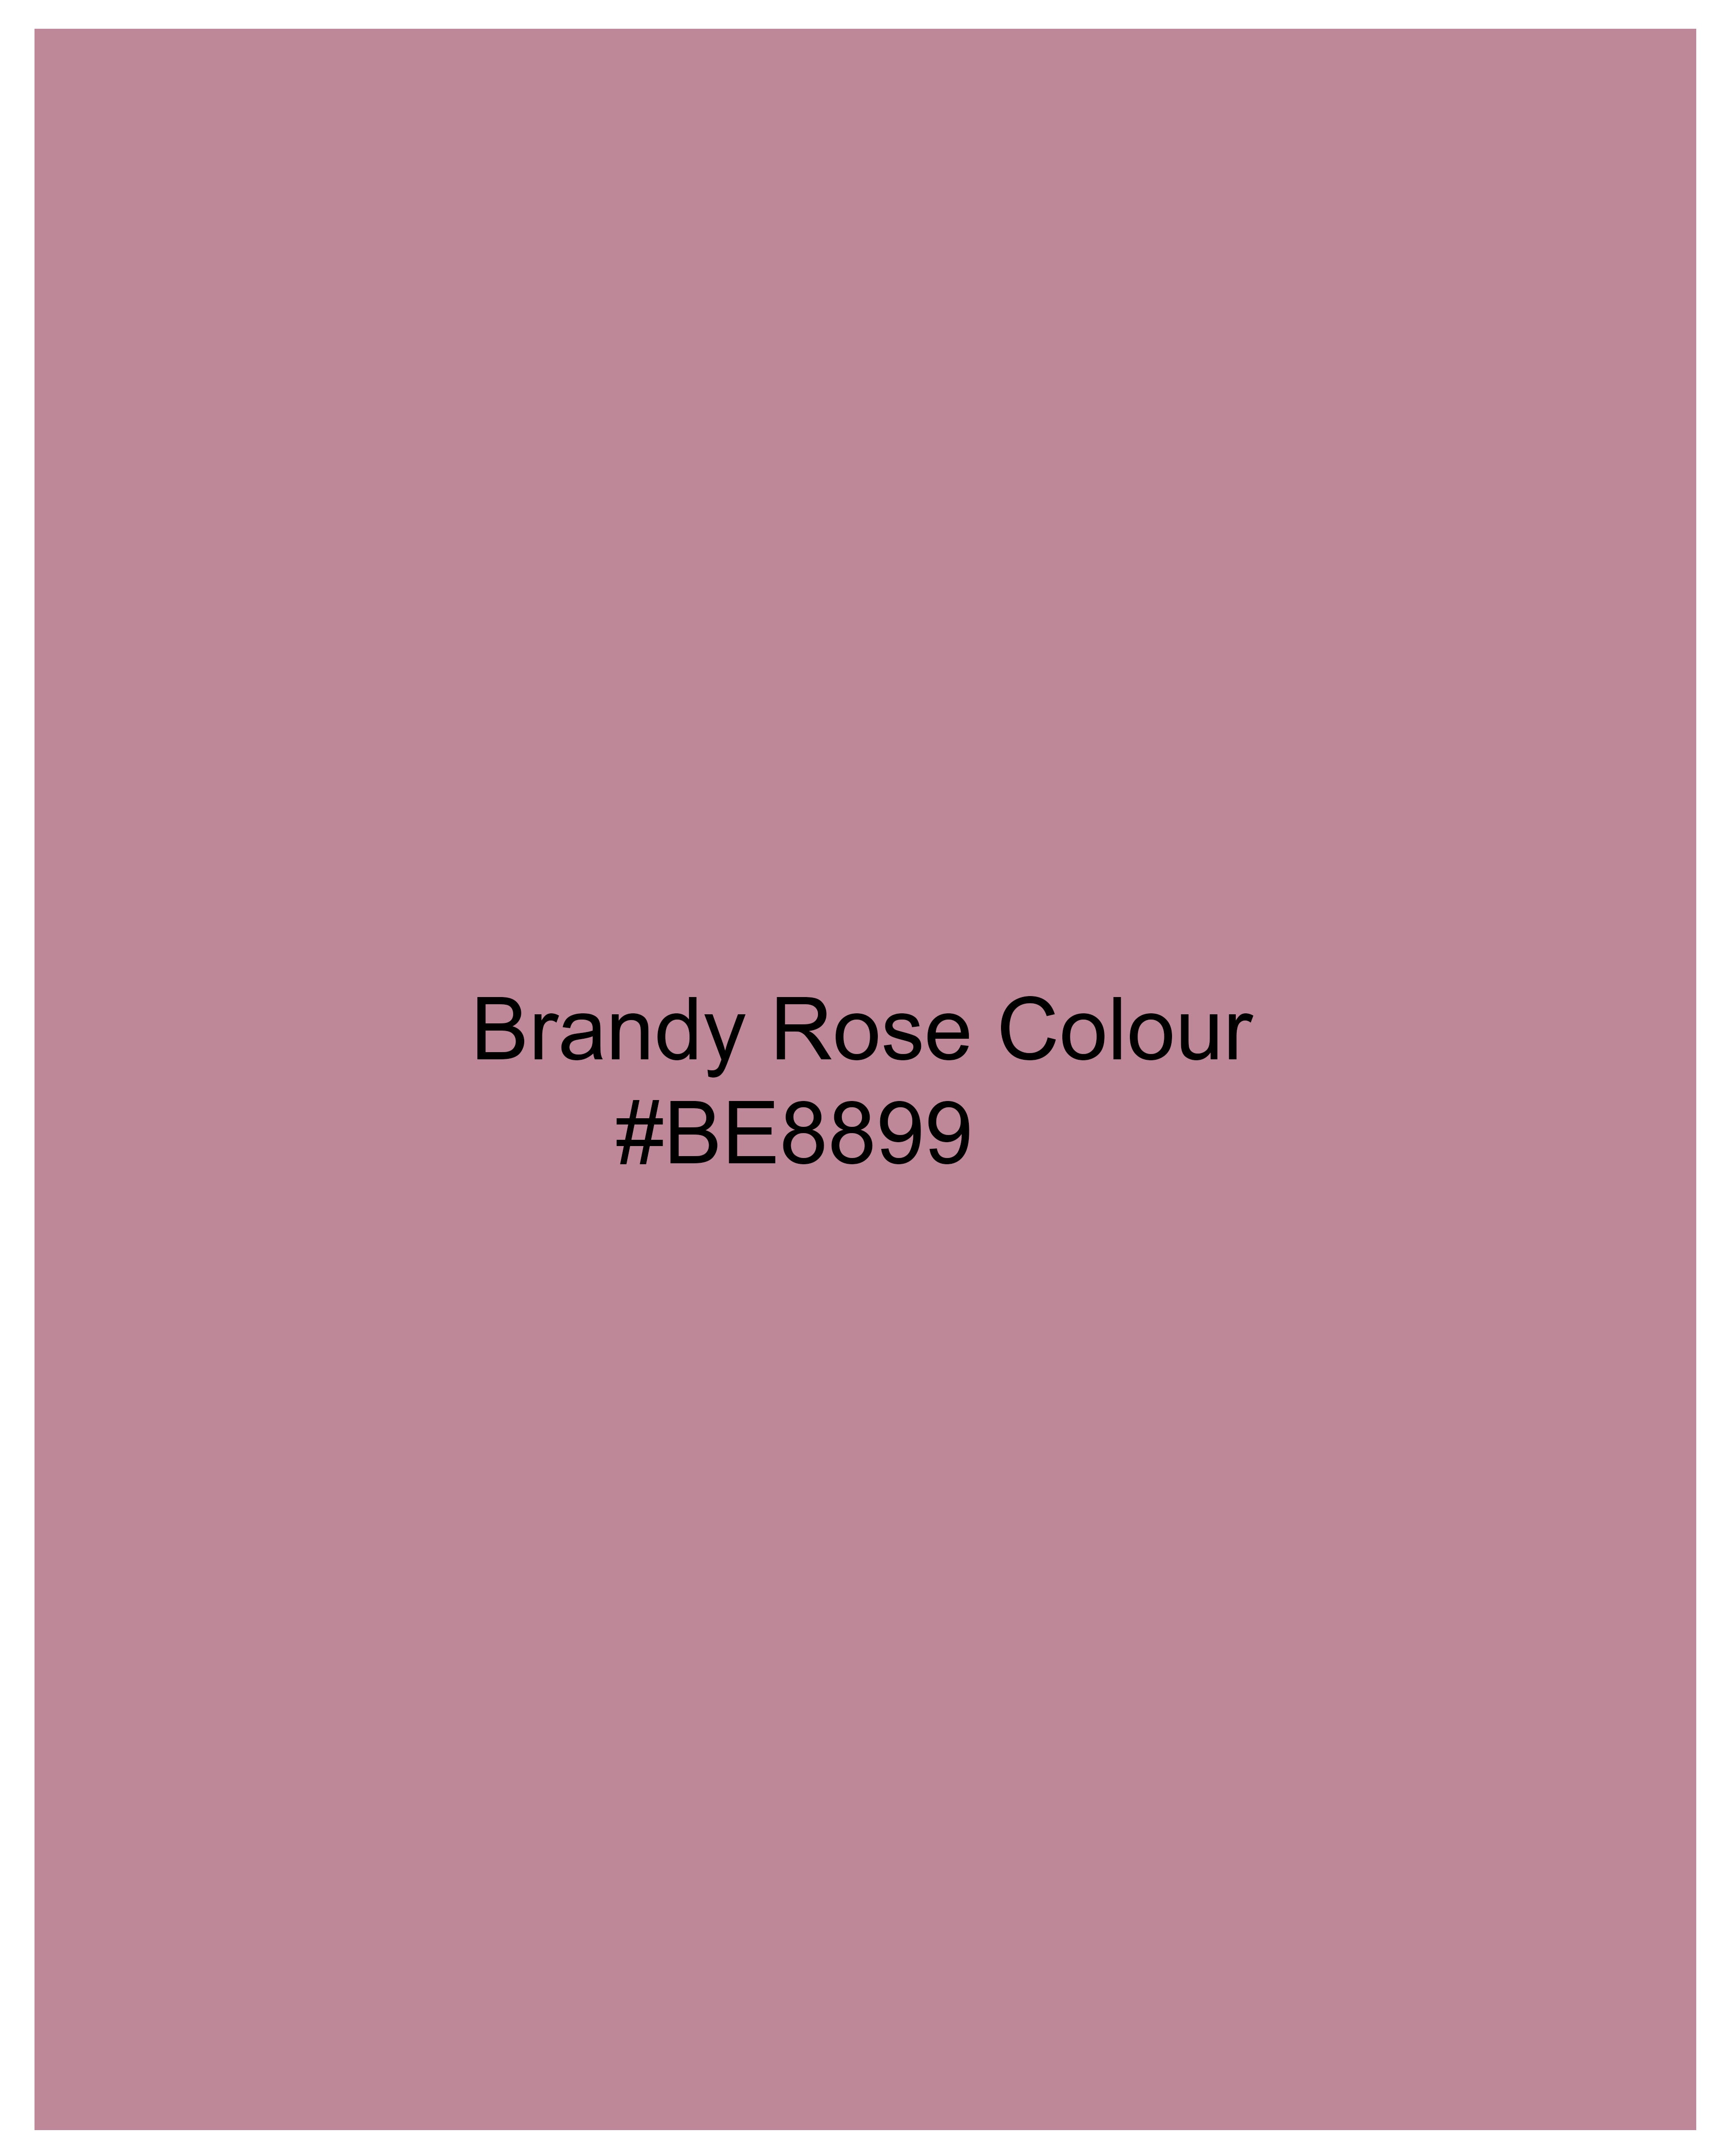 Brandy Rose Pink Viscose Crop Top WTP022-32, WTP022-34, WTP022-36, WTP022-38, WTP022-40, WTP022-42